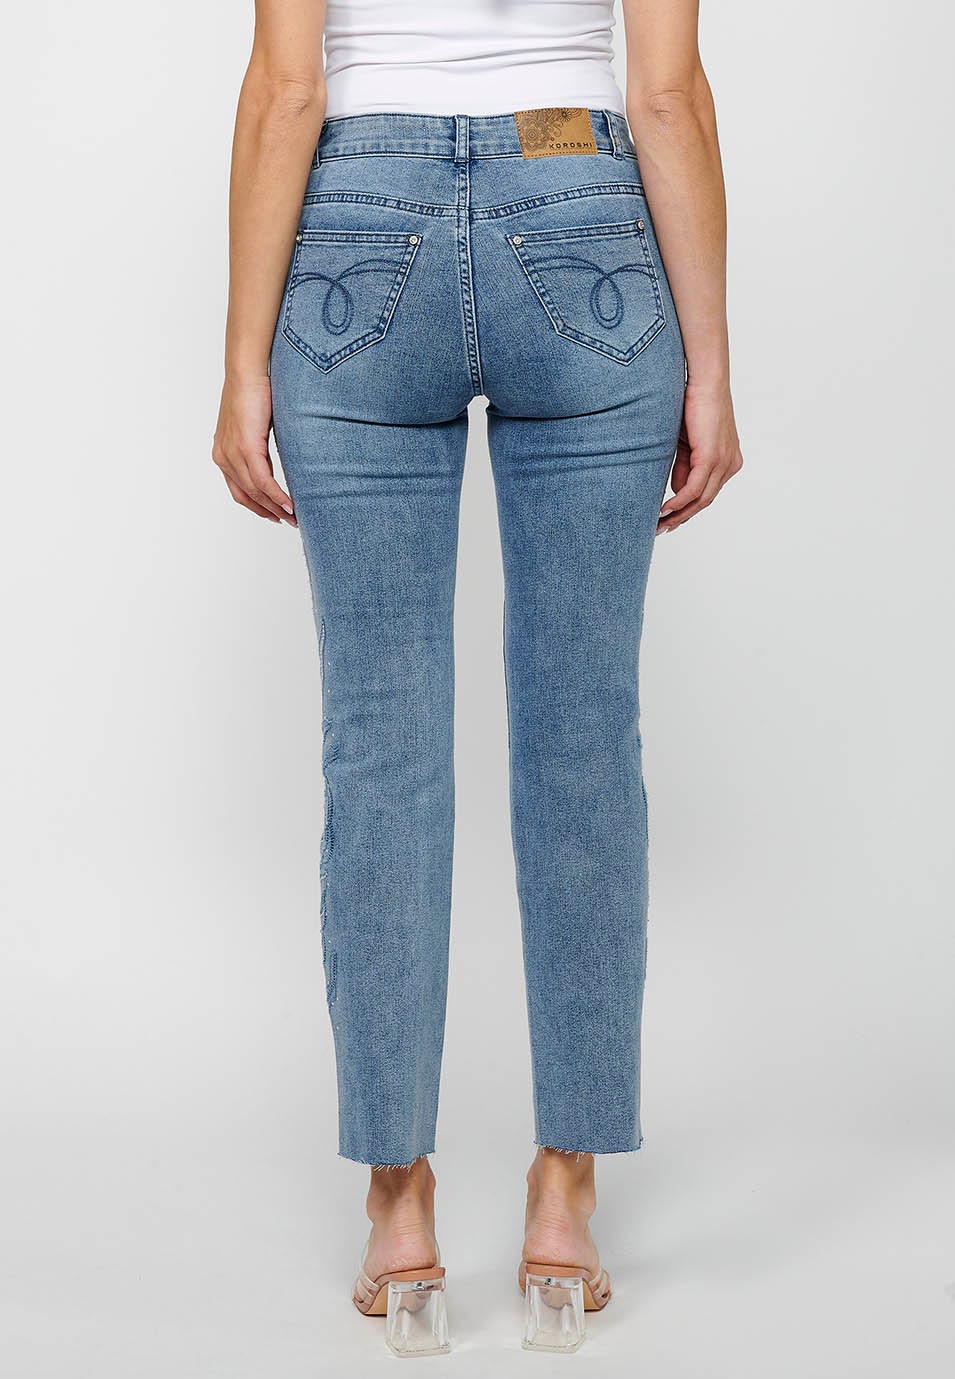 Pantalon long évasé en jean avec fermeture éclair sur le devant et détails brodés de fleurs bleu clair pour femme 4